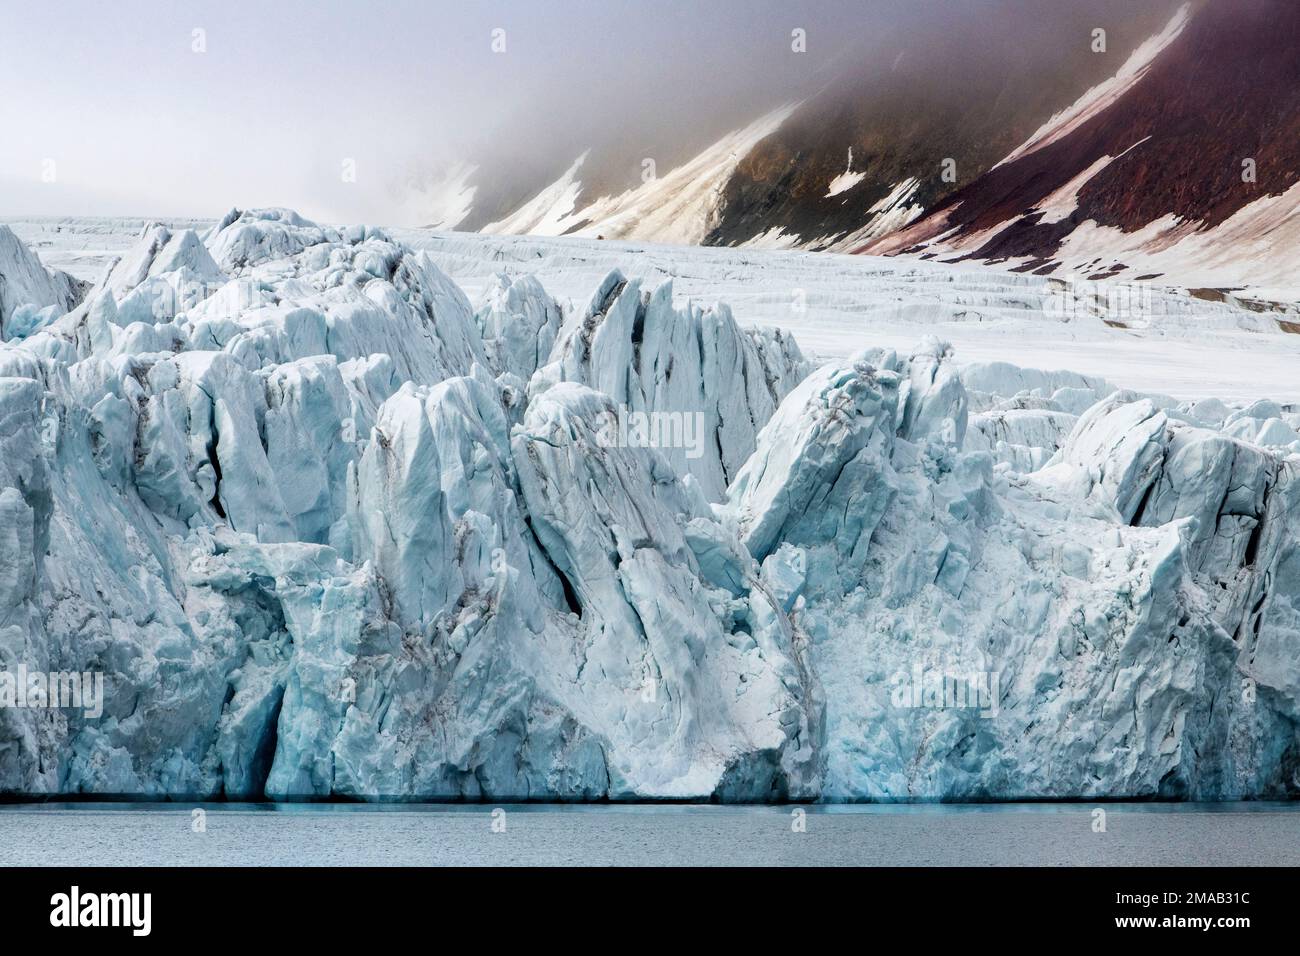 Glacier Samarinbreen, fjord Hornsund, archipel de Svalbard, Norvège arctique. Expédition bateau de croisière Greg Mortimer dans l'archipel de Svalbard, dans le Nord arctique Banque D'Images